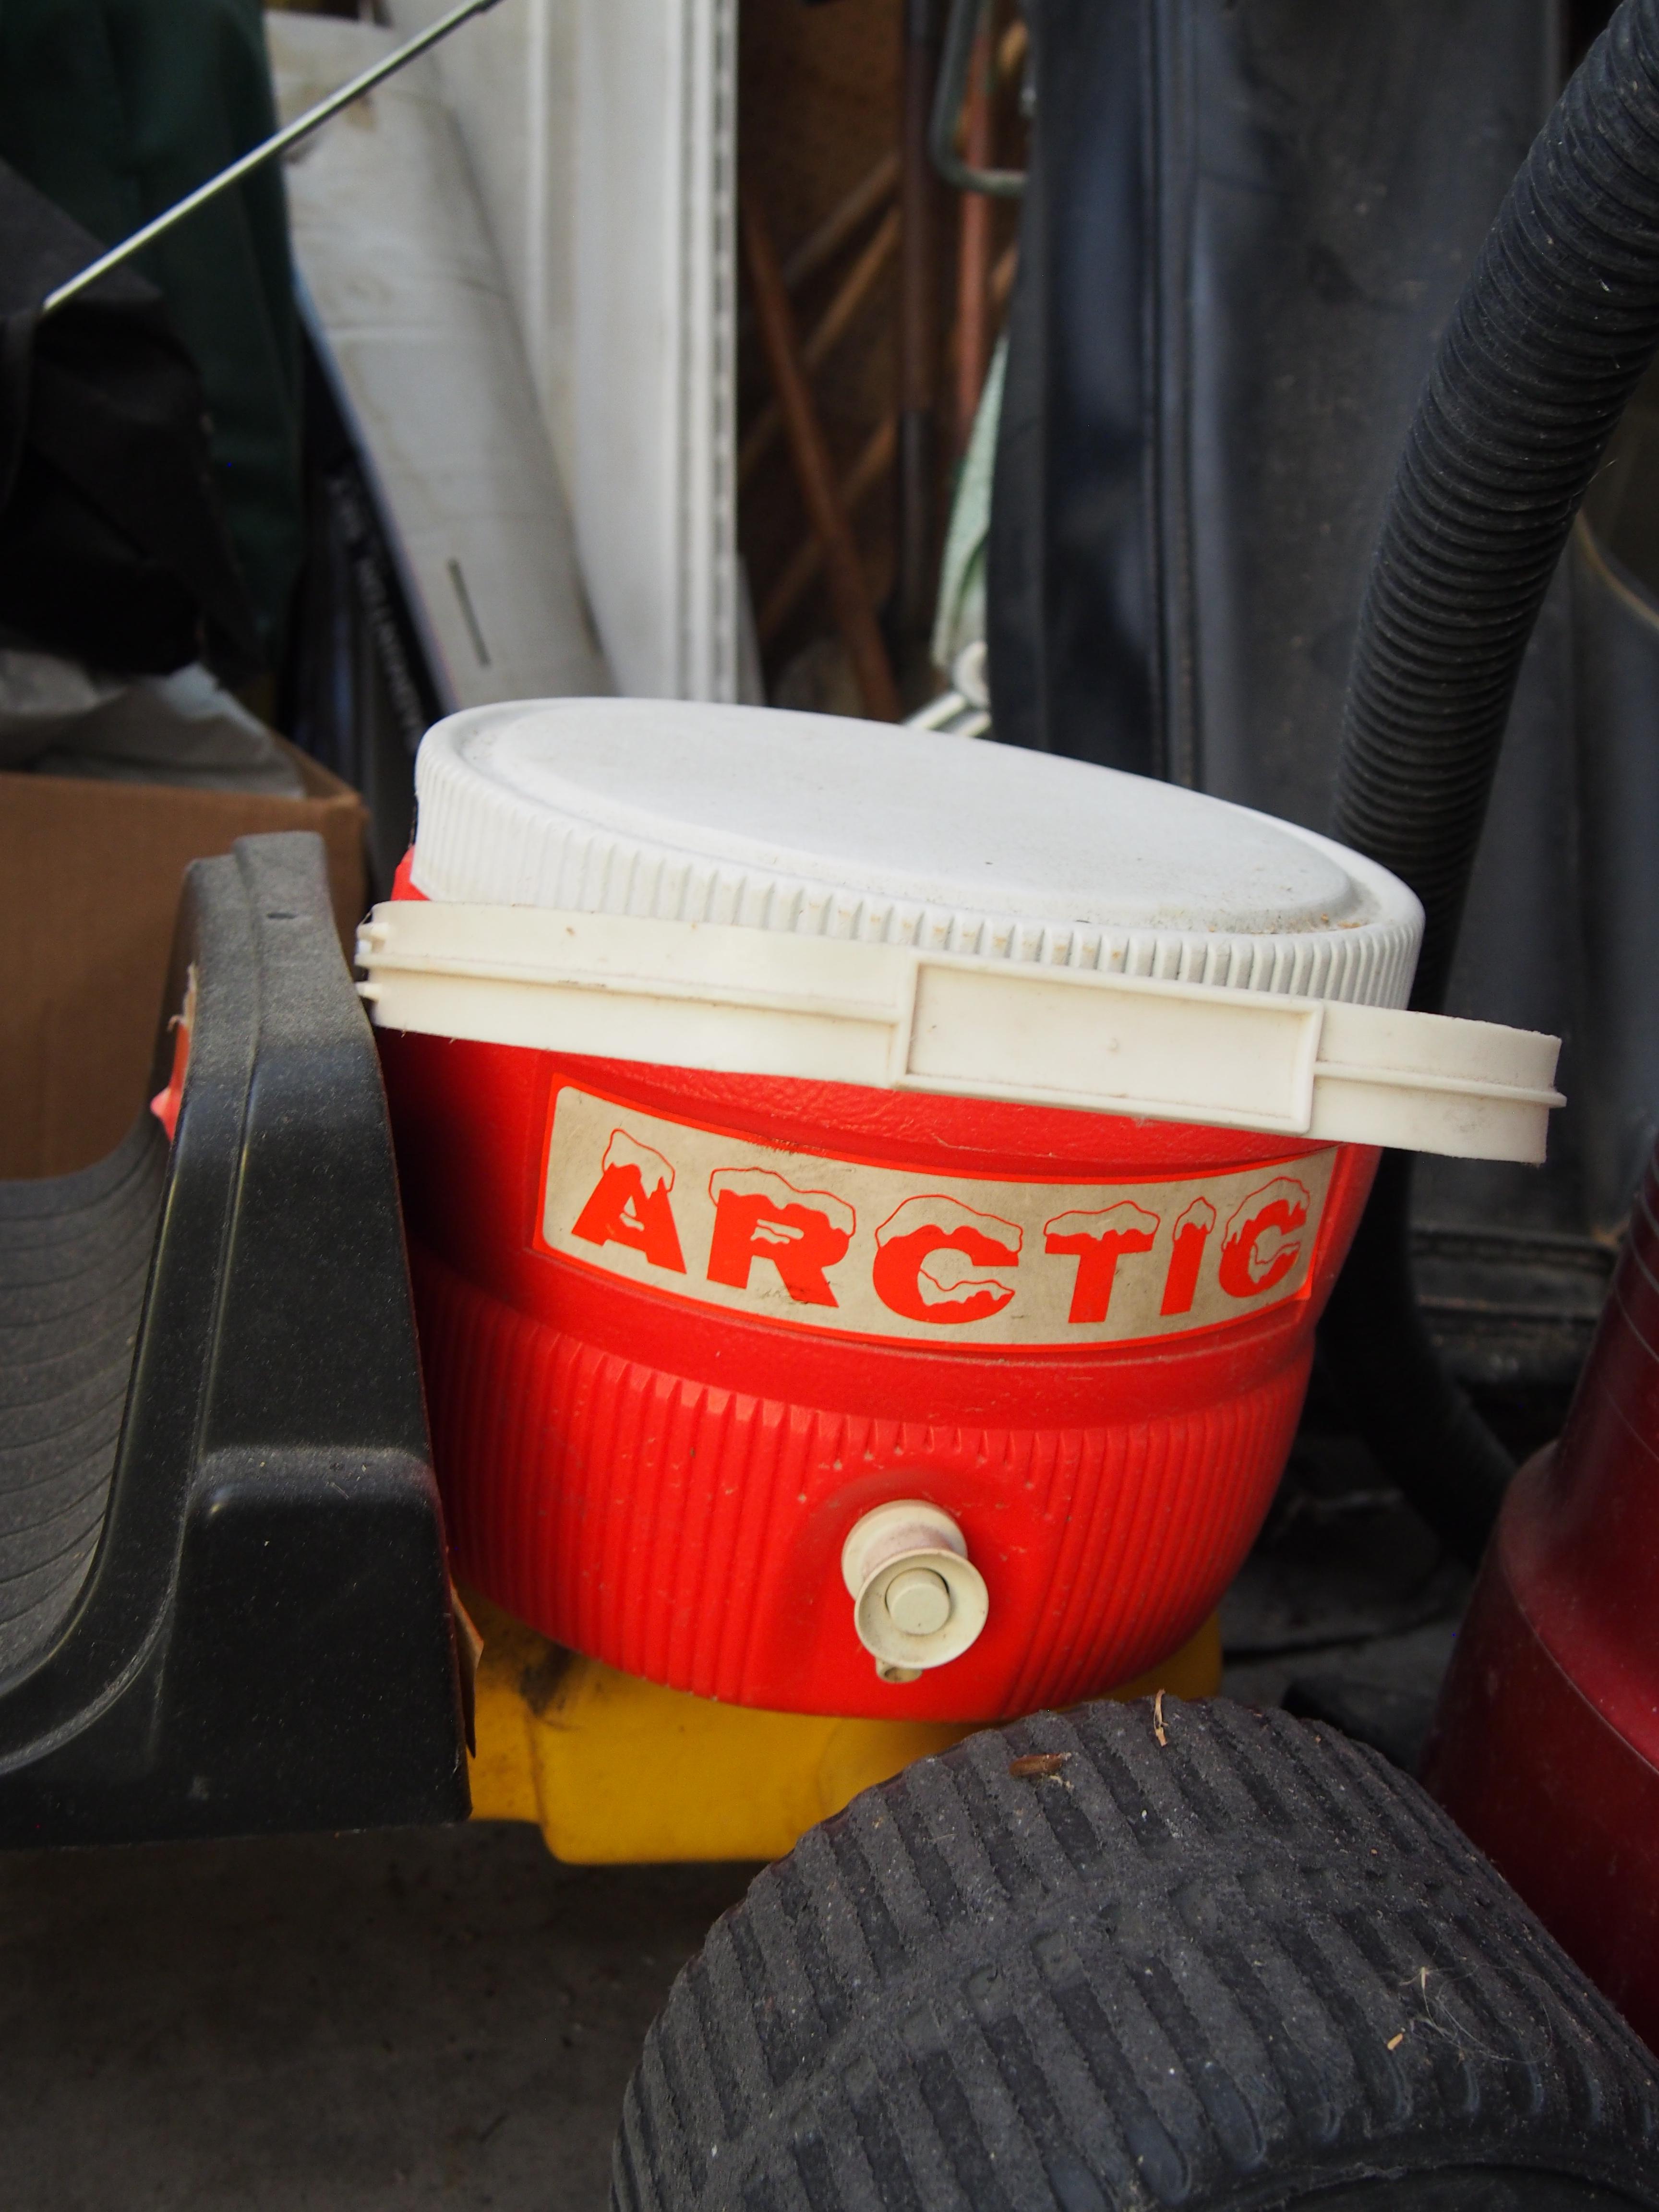 Arctic cooler